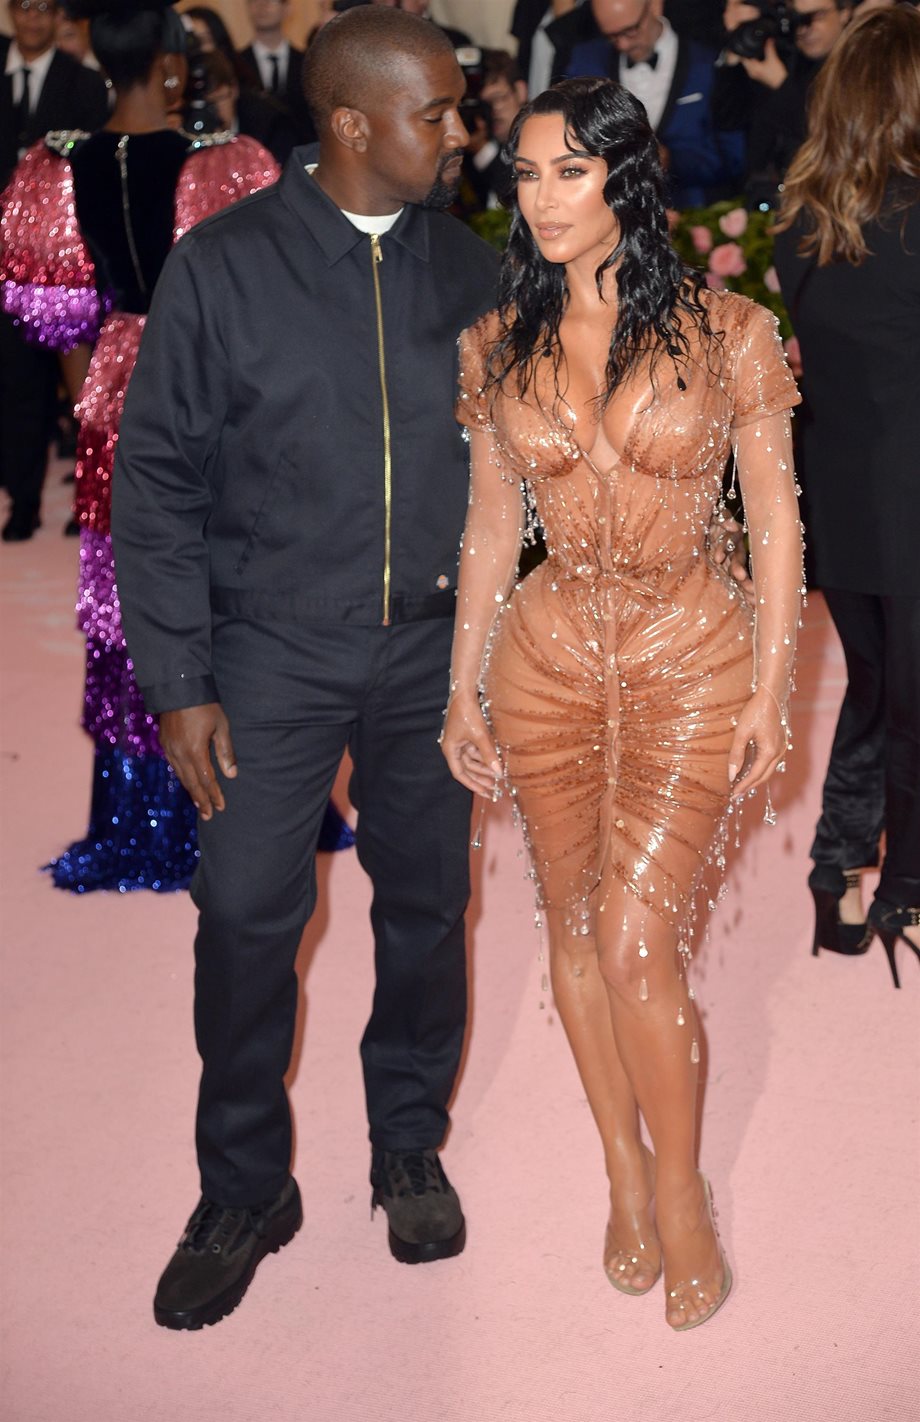 Έντονος τσακωμός για Kim Kardashian και Kanye West! (video)